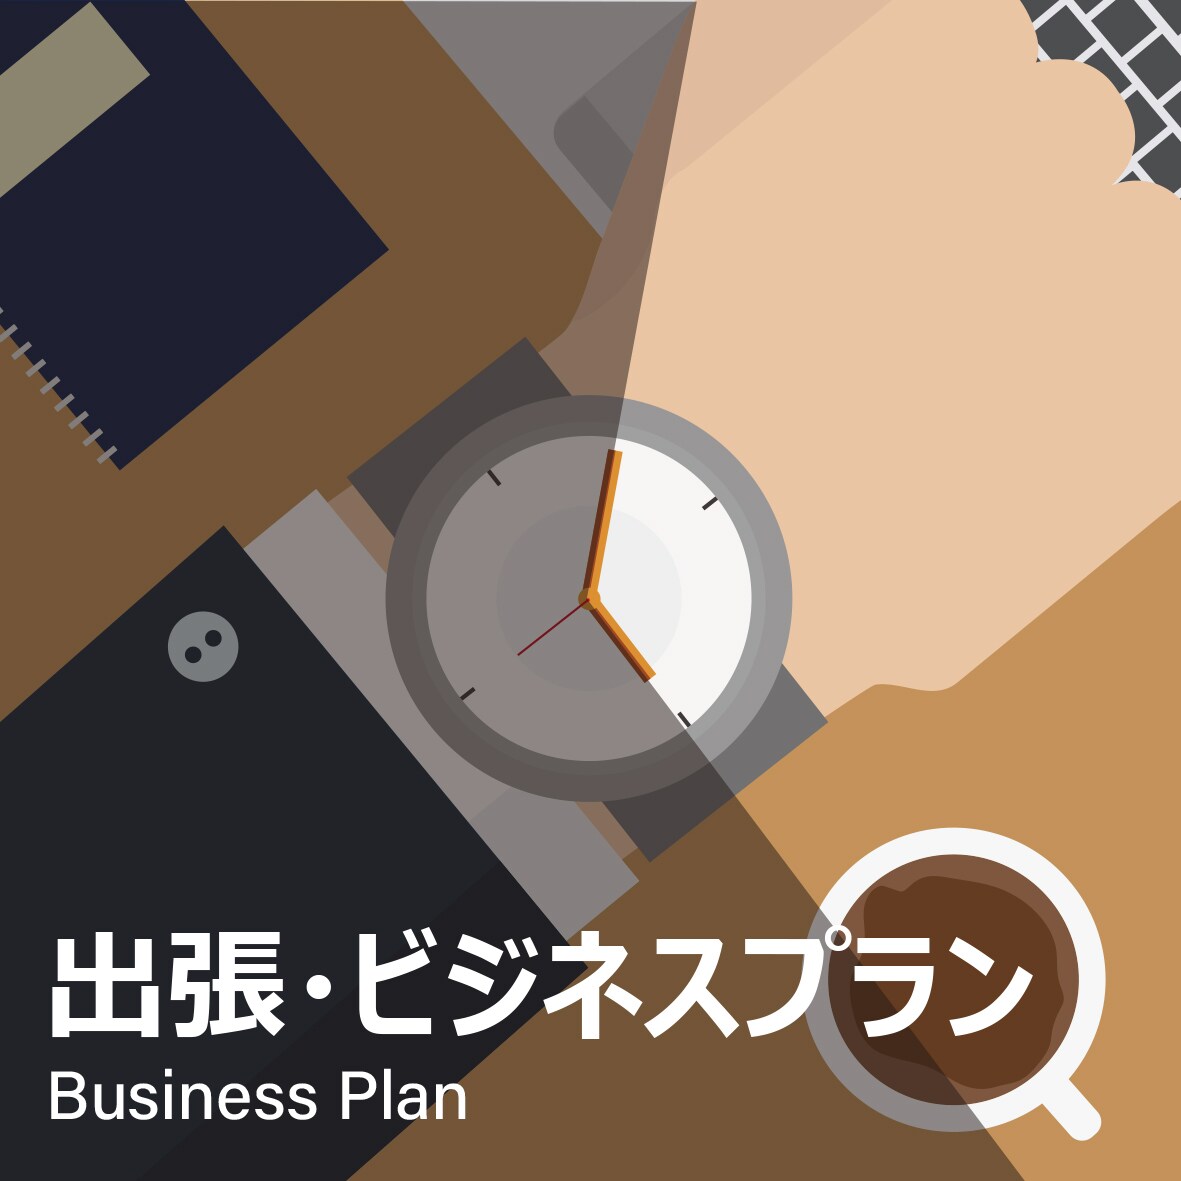 Telework plan business trip business plan logo